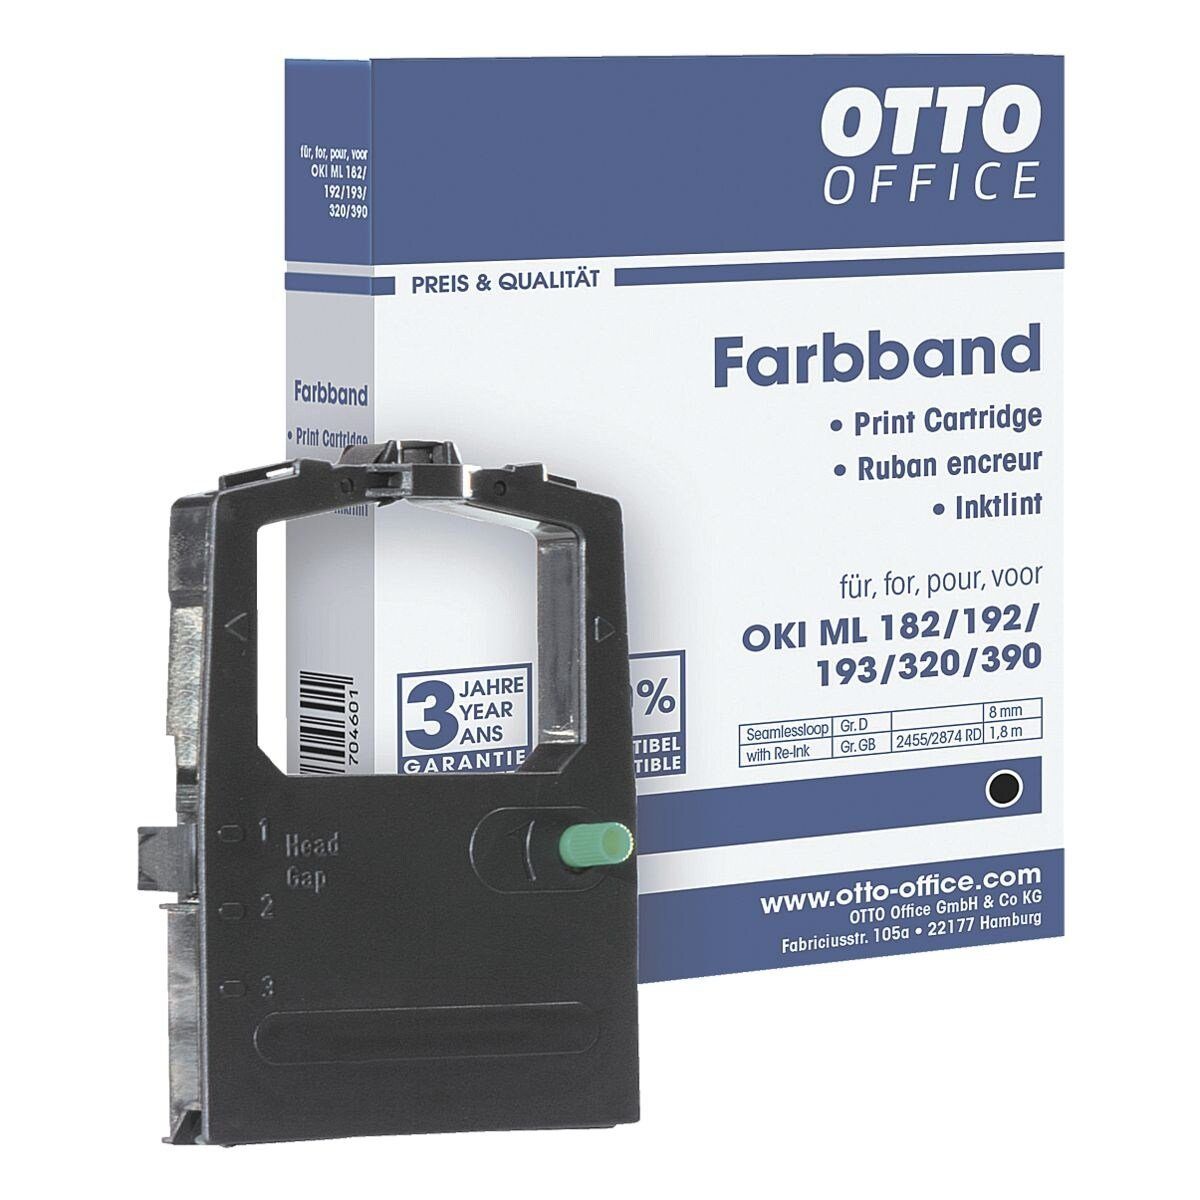 Otto Office Office Druckerband OKI Nadeldrucker, Farbband für ML, schwarz